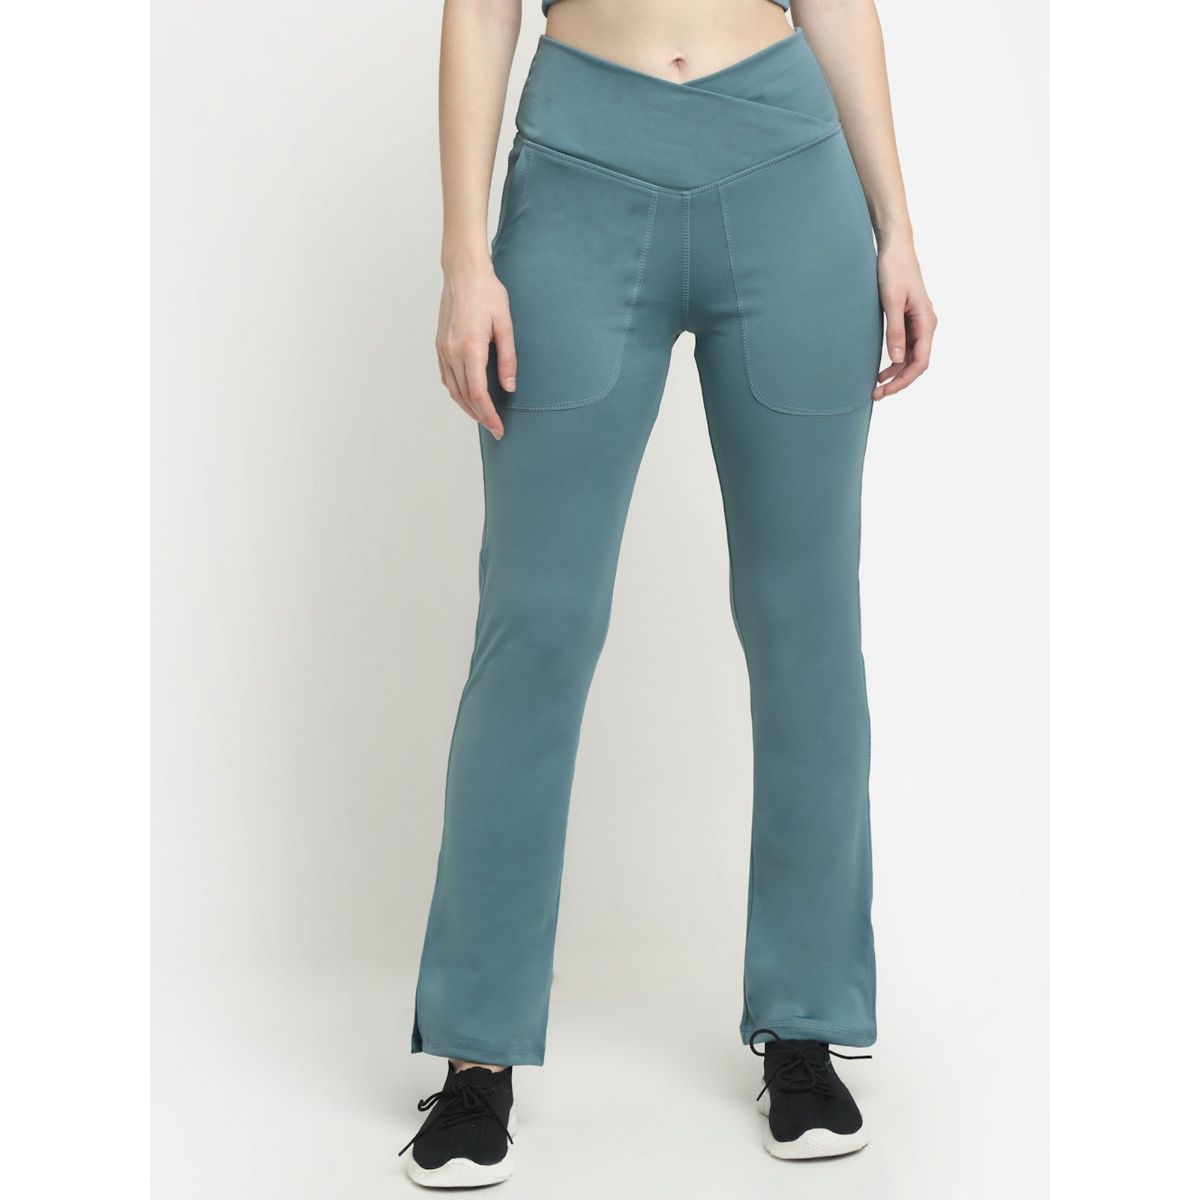 EVERDION Blue Crossover Pocket Split Hem Full Length Flare Yoga Pants (S)